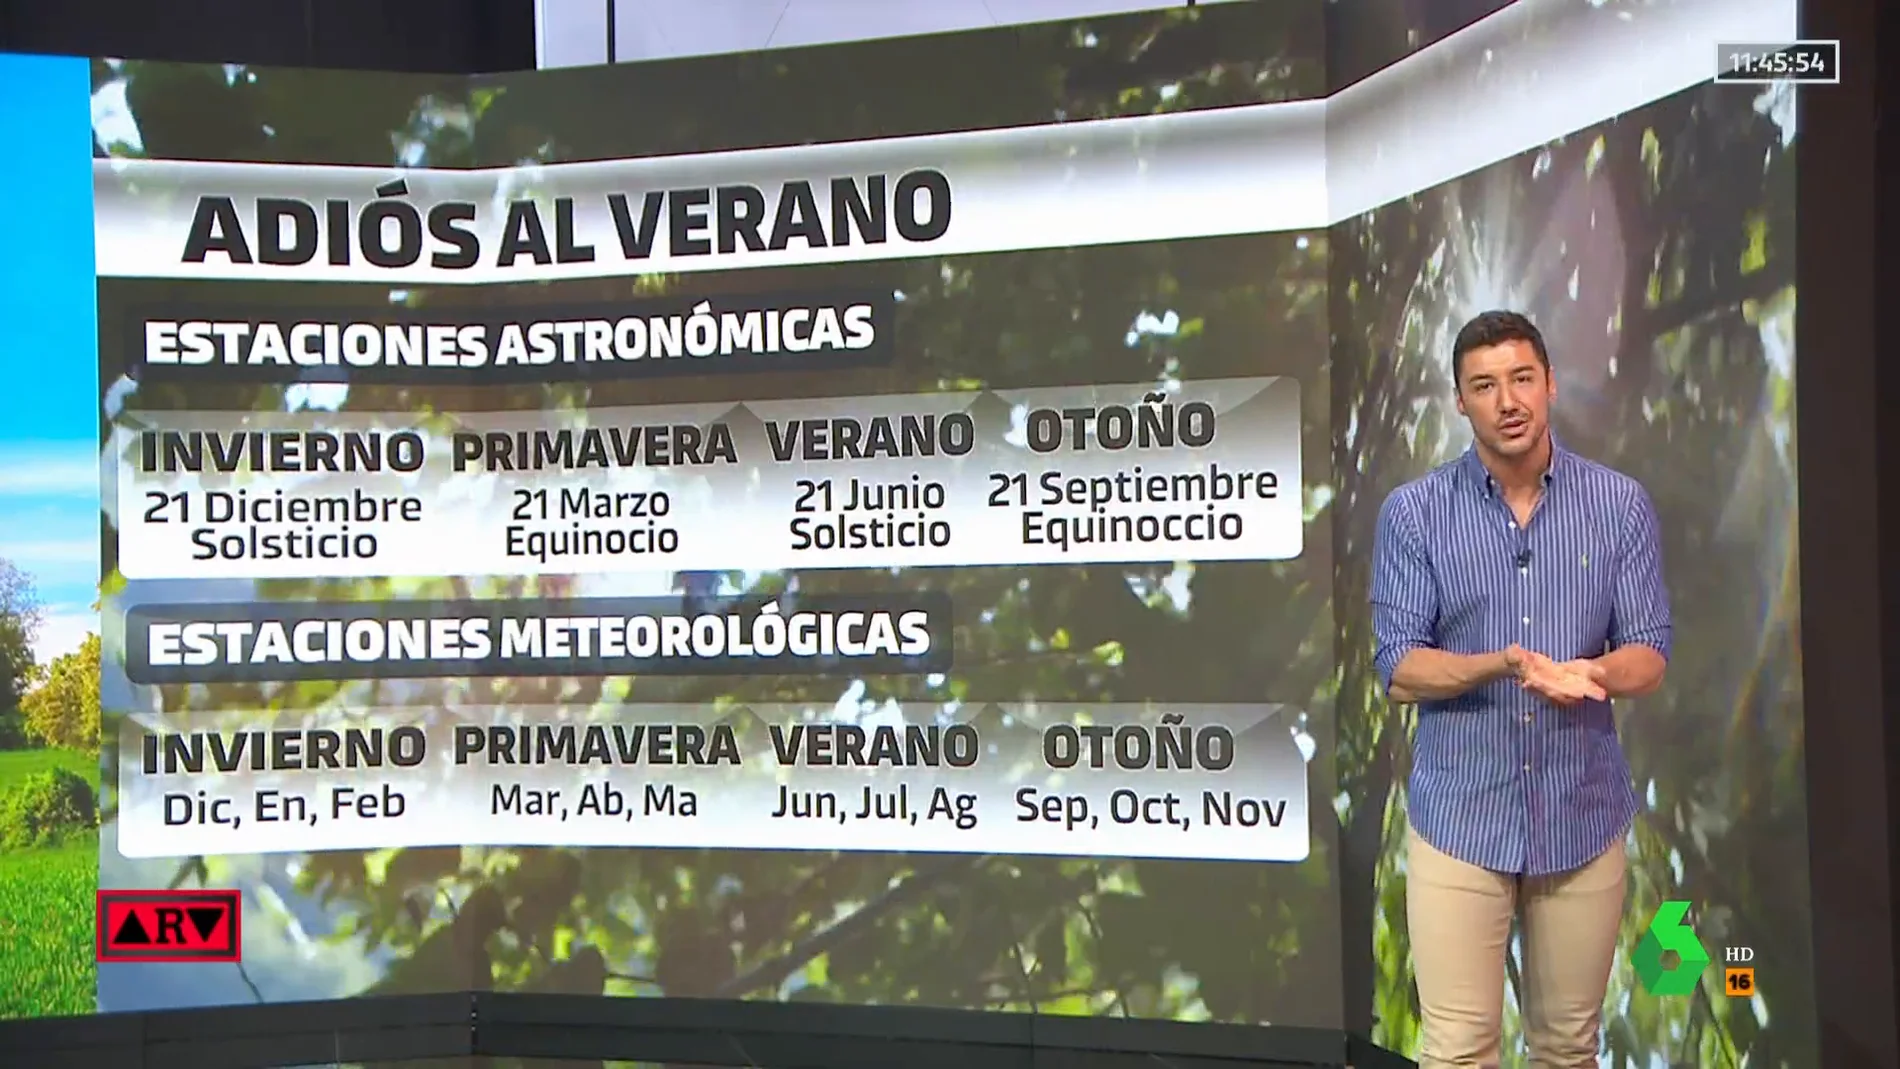 Las diferencias entre el calendario astronómico y el meteorológico.